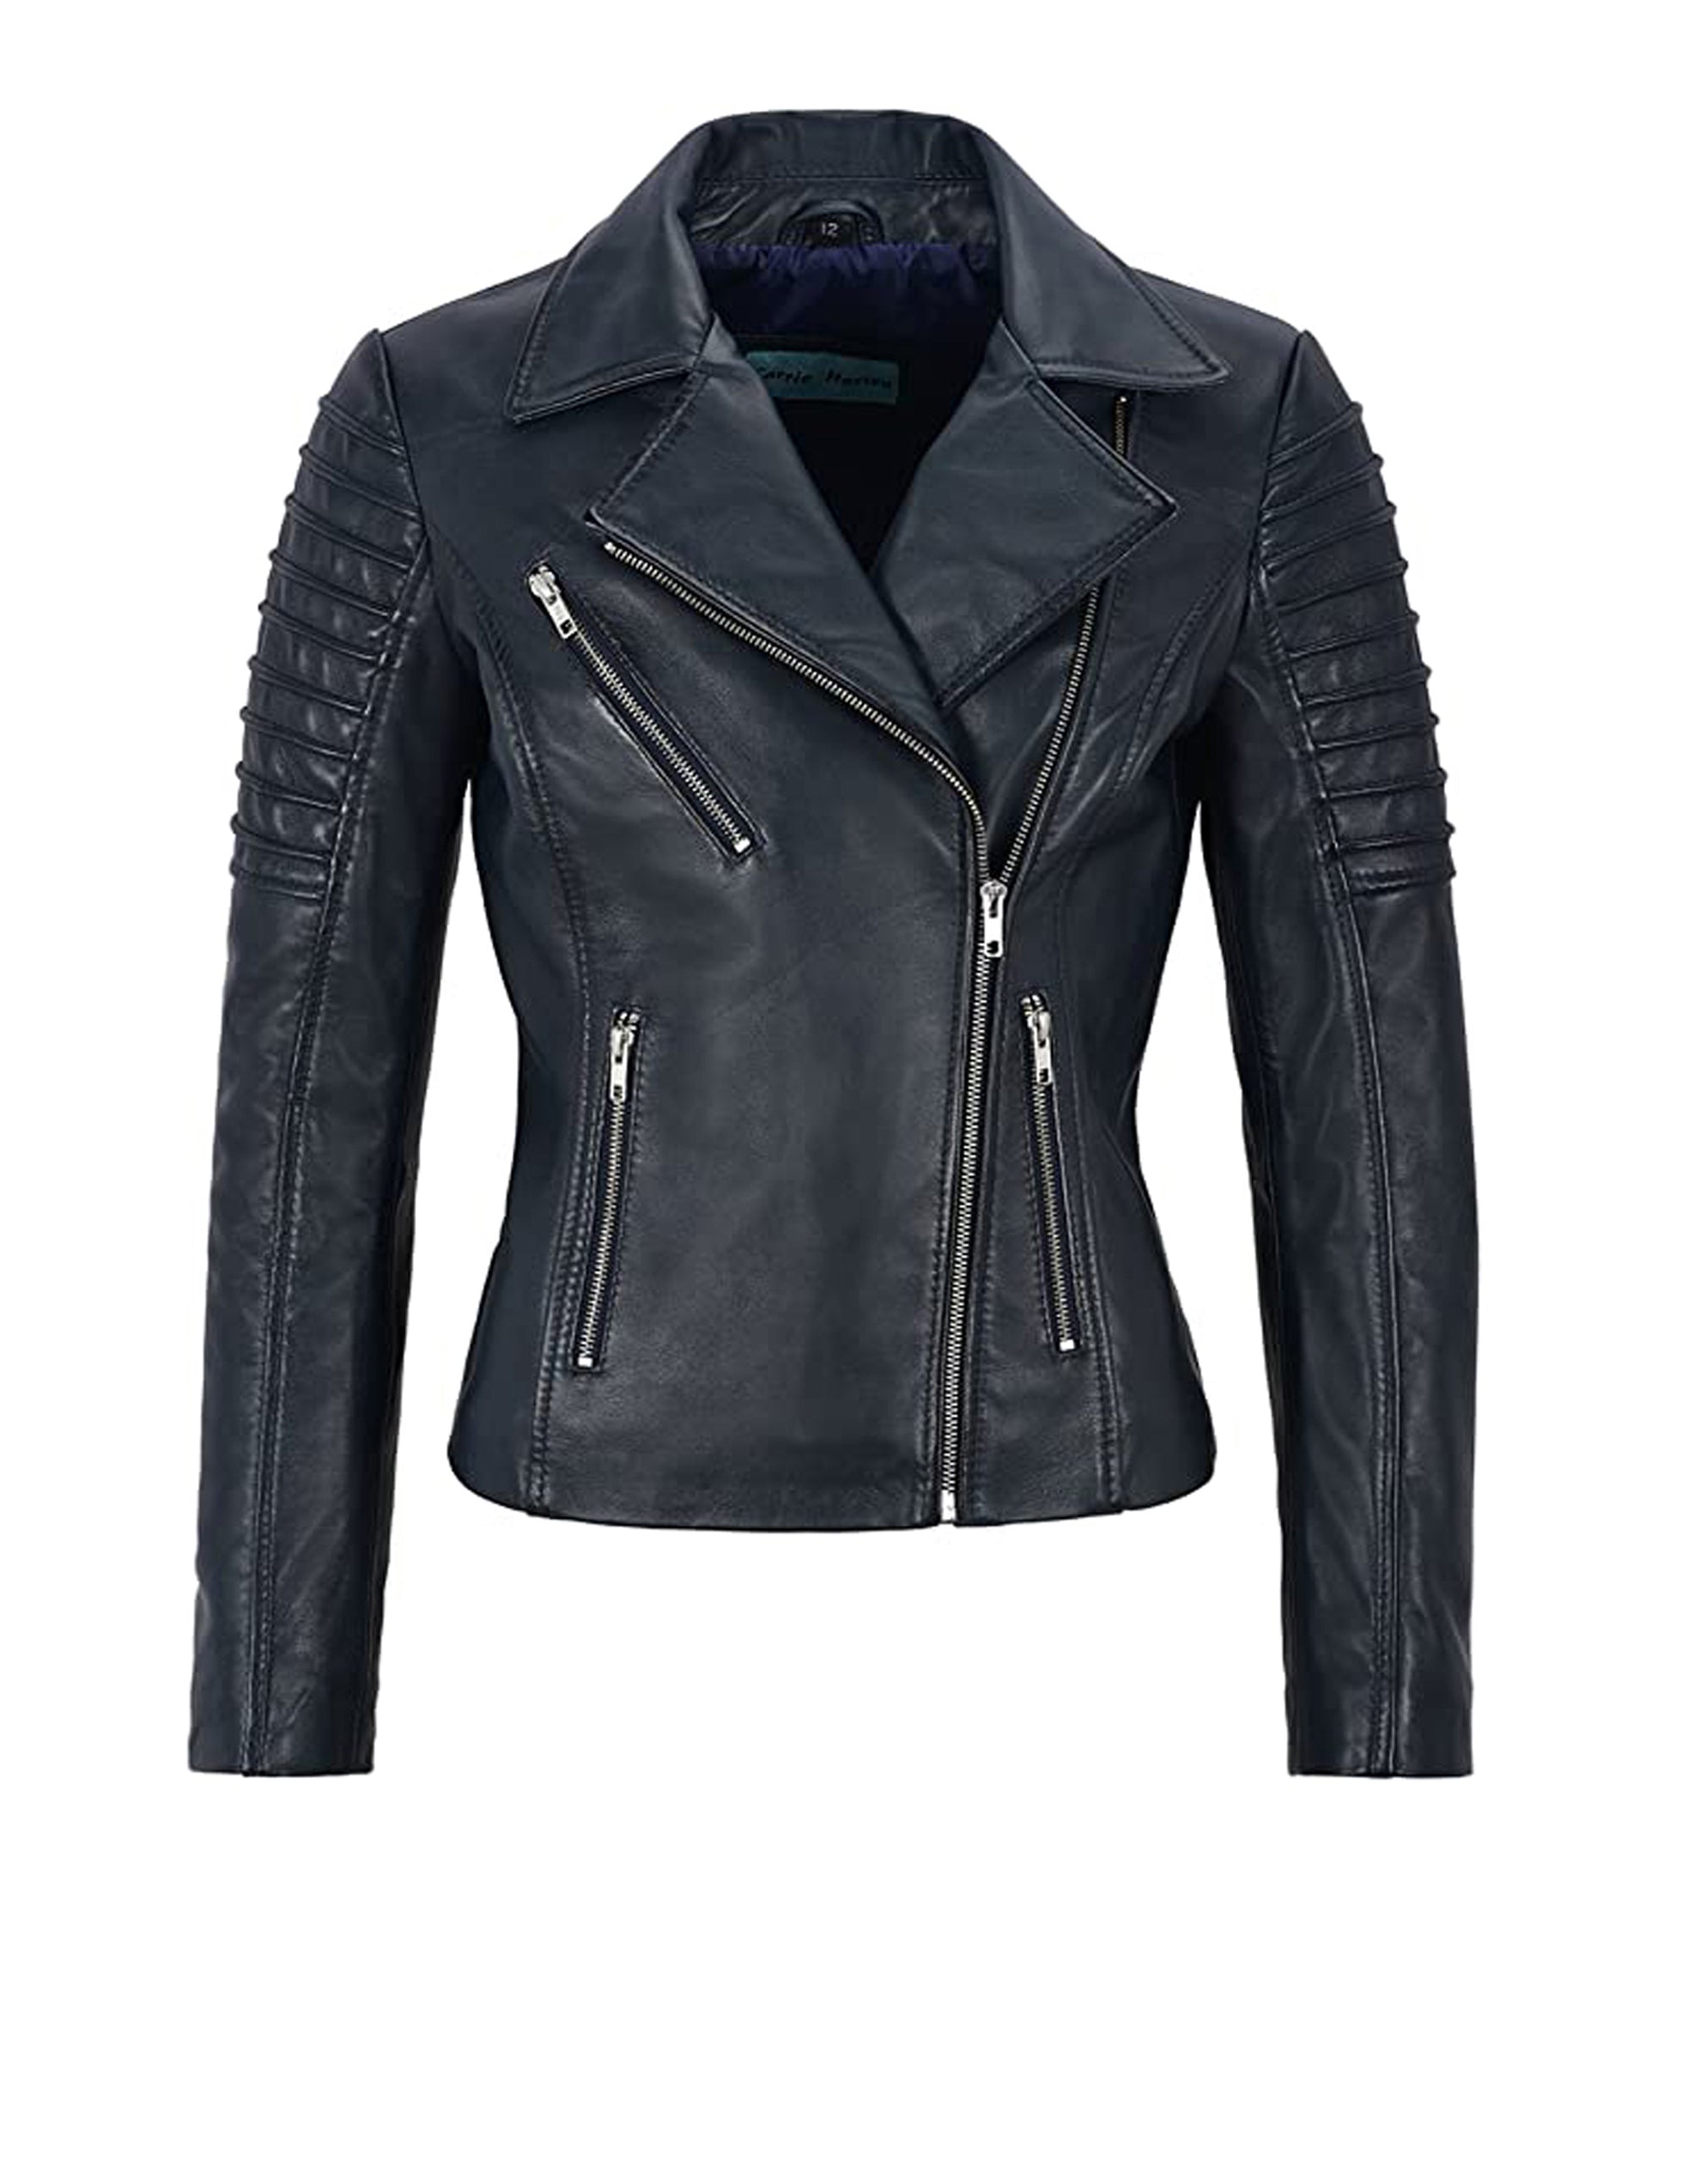 Women's Black Sheepskin Leather Jacket